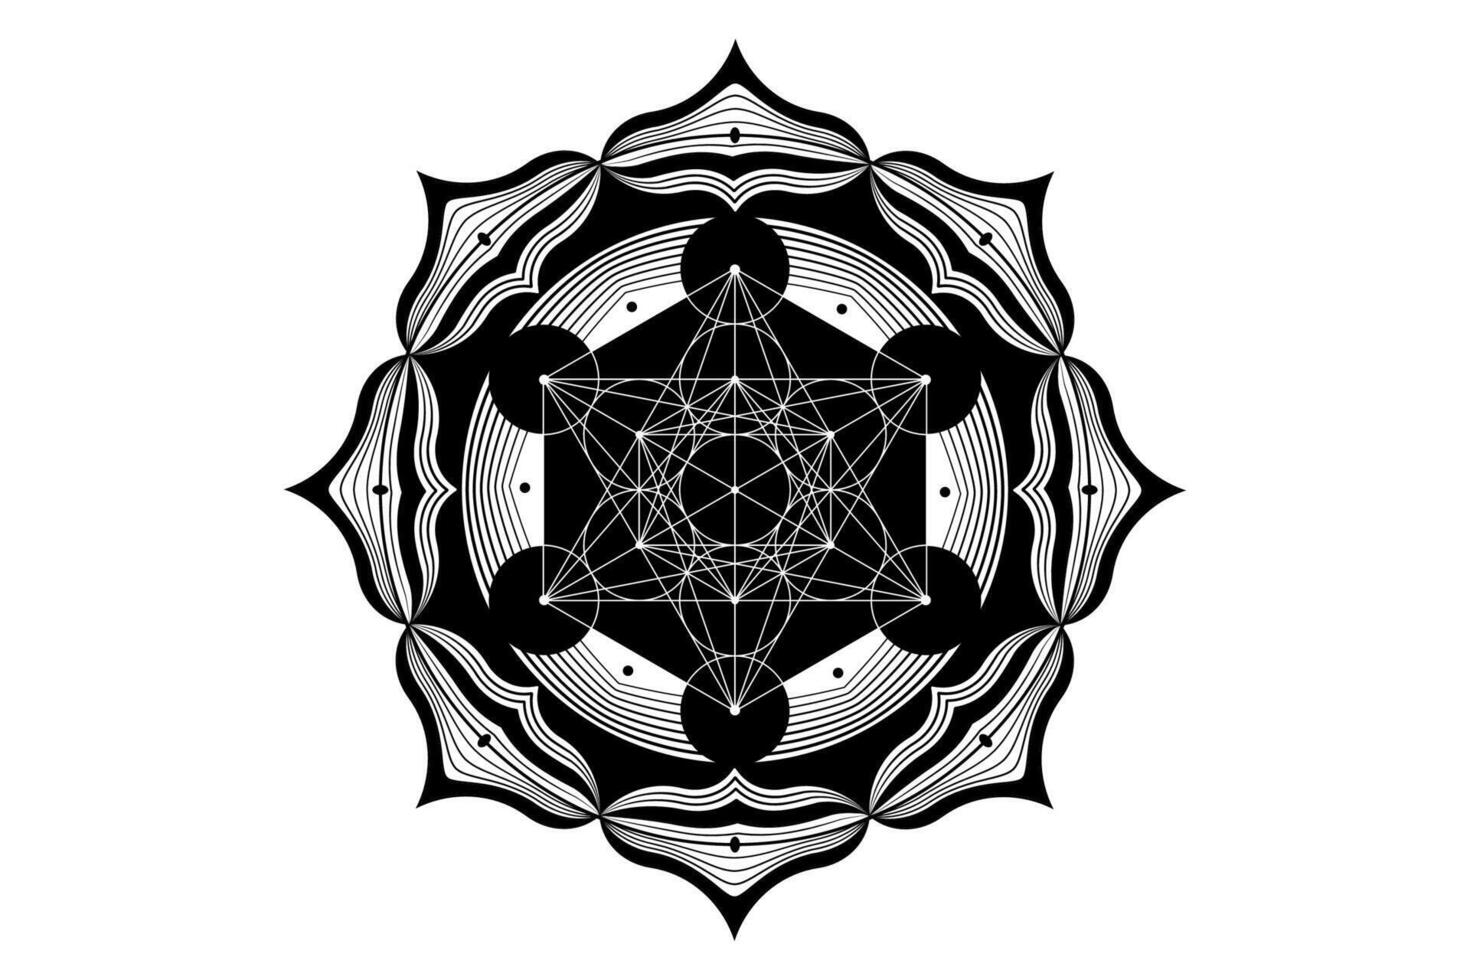 heilig Mandala von Metatronen Würfel, mystisch Blume von Leben. heilig Geometrie, Grafik Element Vektor isoliert Illustration. Mystiker Symbol platonisch Feststoffe, abstrakt geometrisch Zeichnung, typisch Ernte Kreise